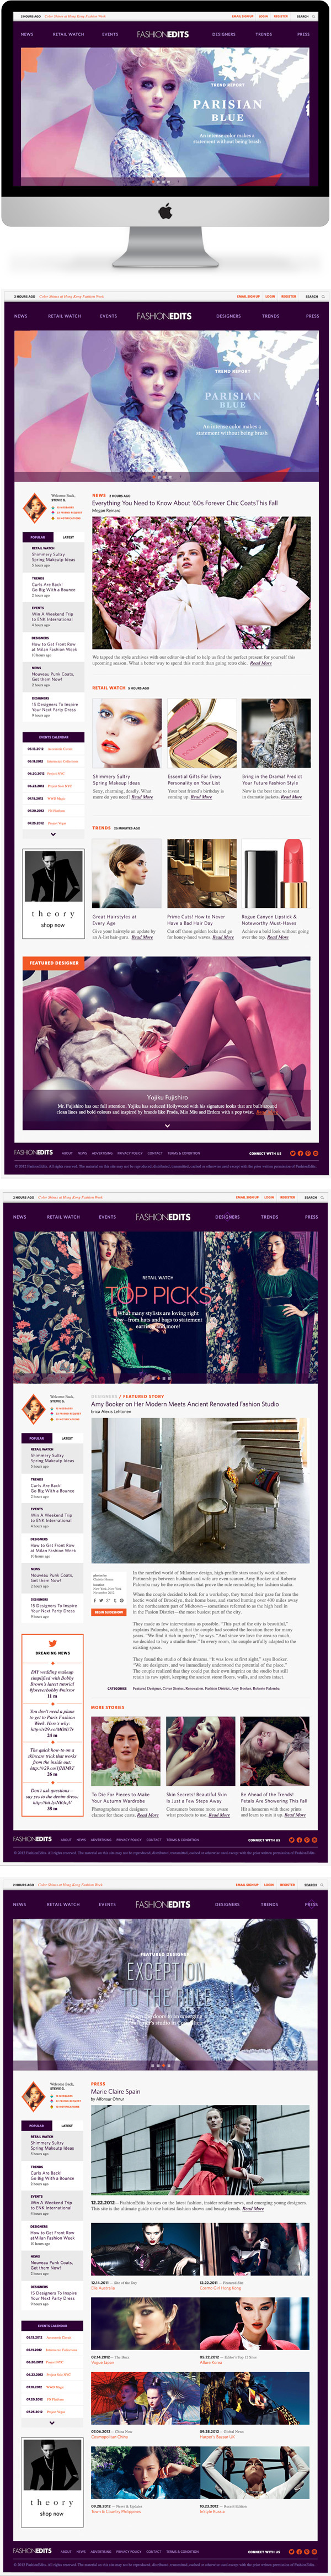 redesign refresh royal violet aster site forecast TRENDING Website Marigold